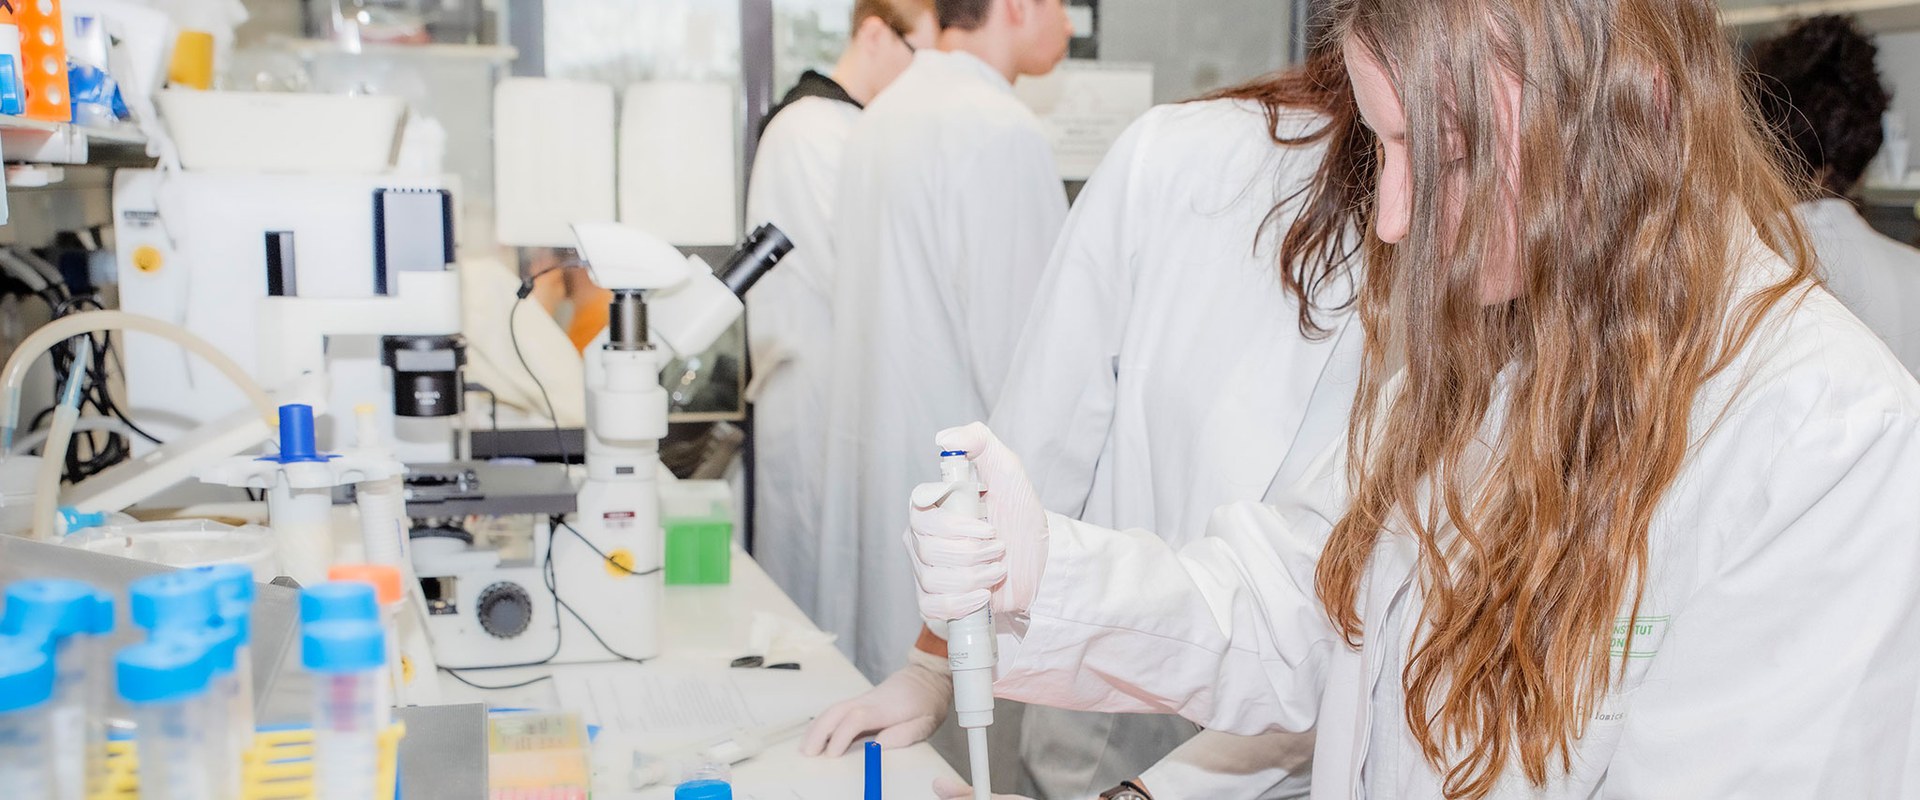 Der UniStem Day bietet Schülerinnen und Schülern der Oberstufe die Gelegenheit, in praktische Inhalte der Stammzellforschung am UKB hinein zu schnuppern.